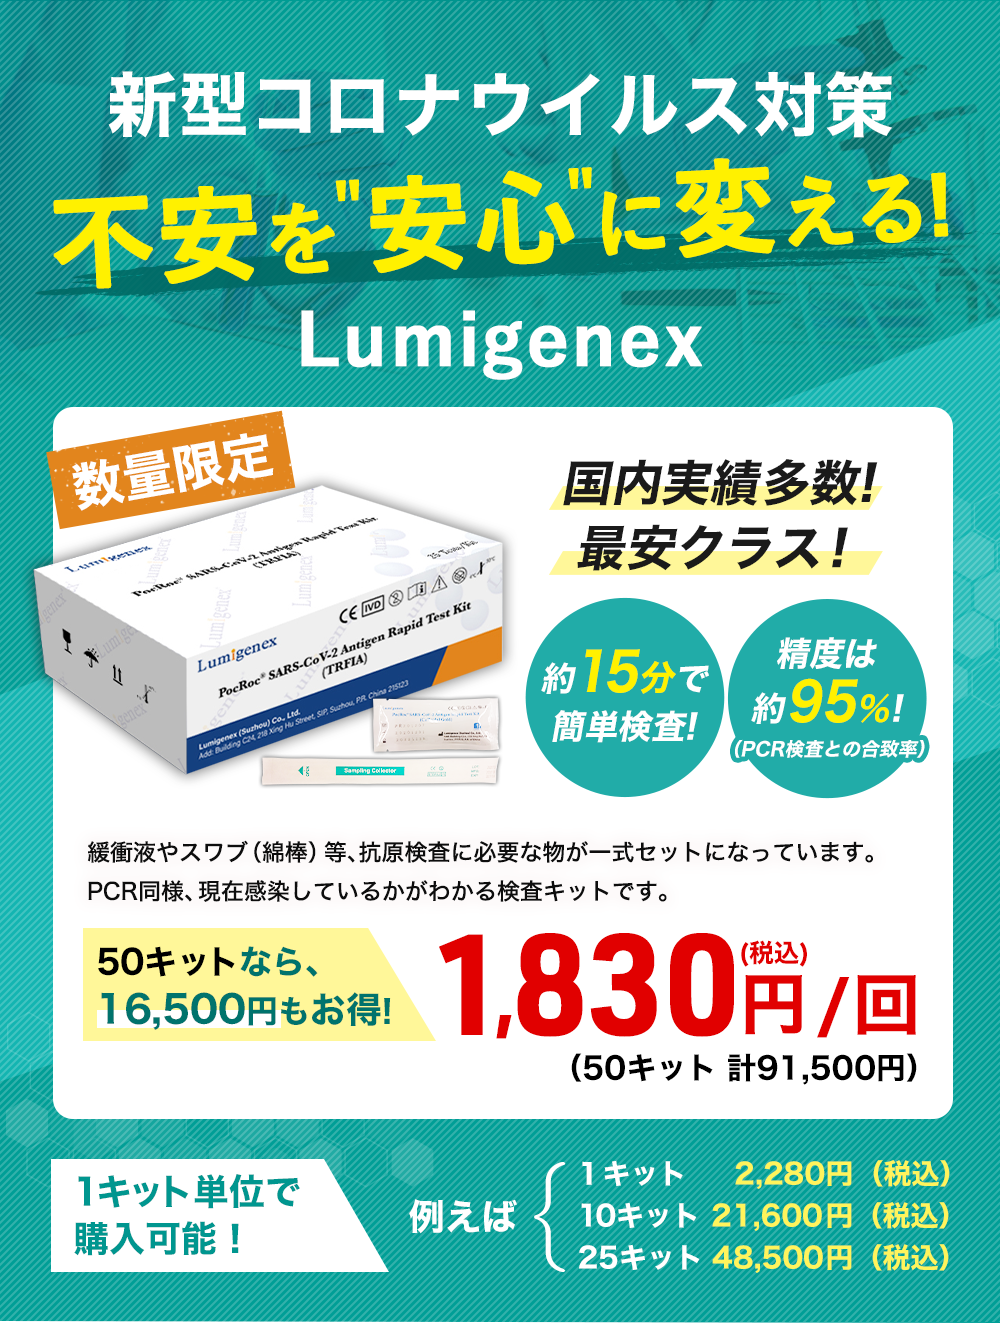 新型コロナウイルス 対策不安を安心に変える!Lumigenex